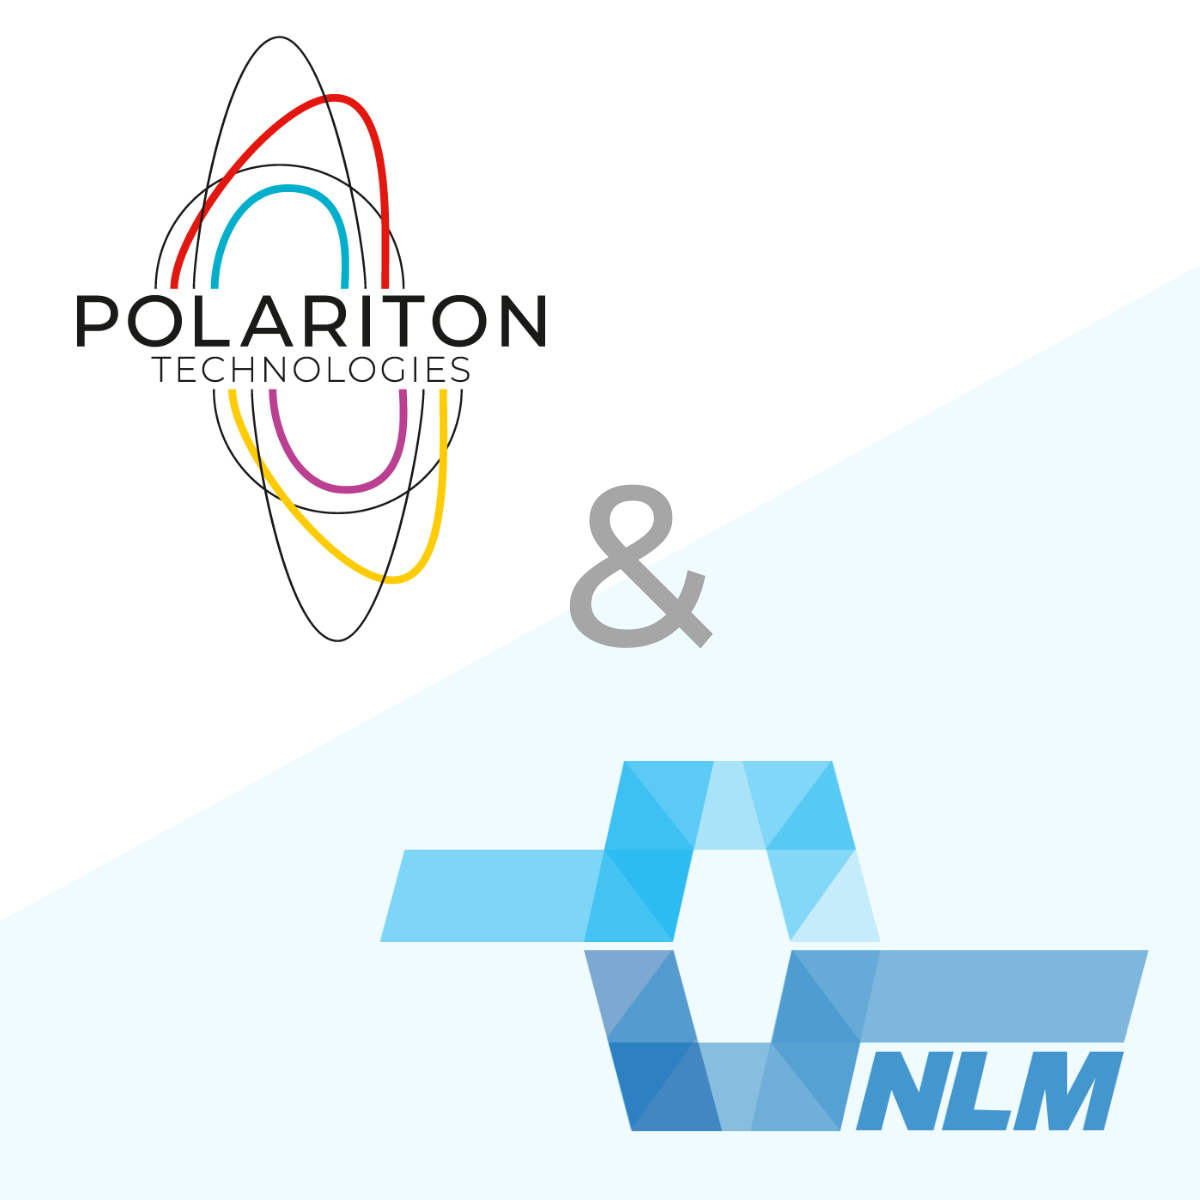 Polariton Press release